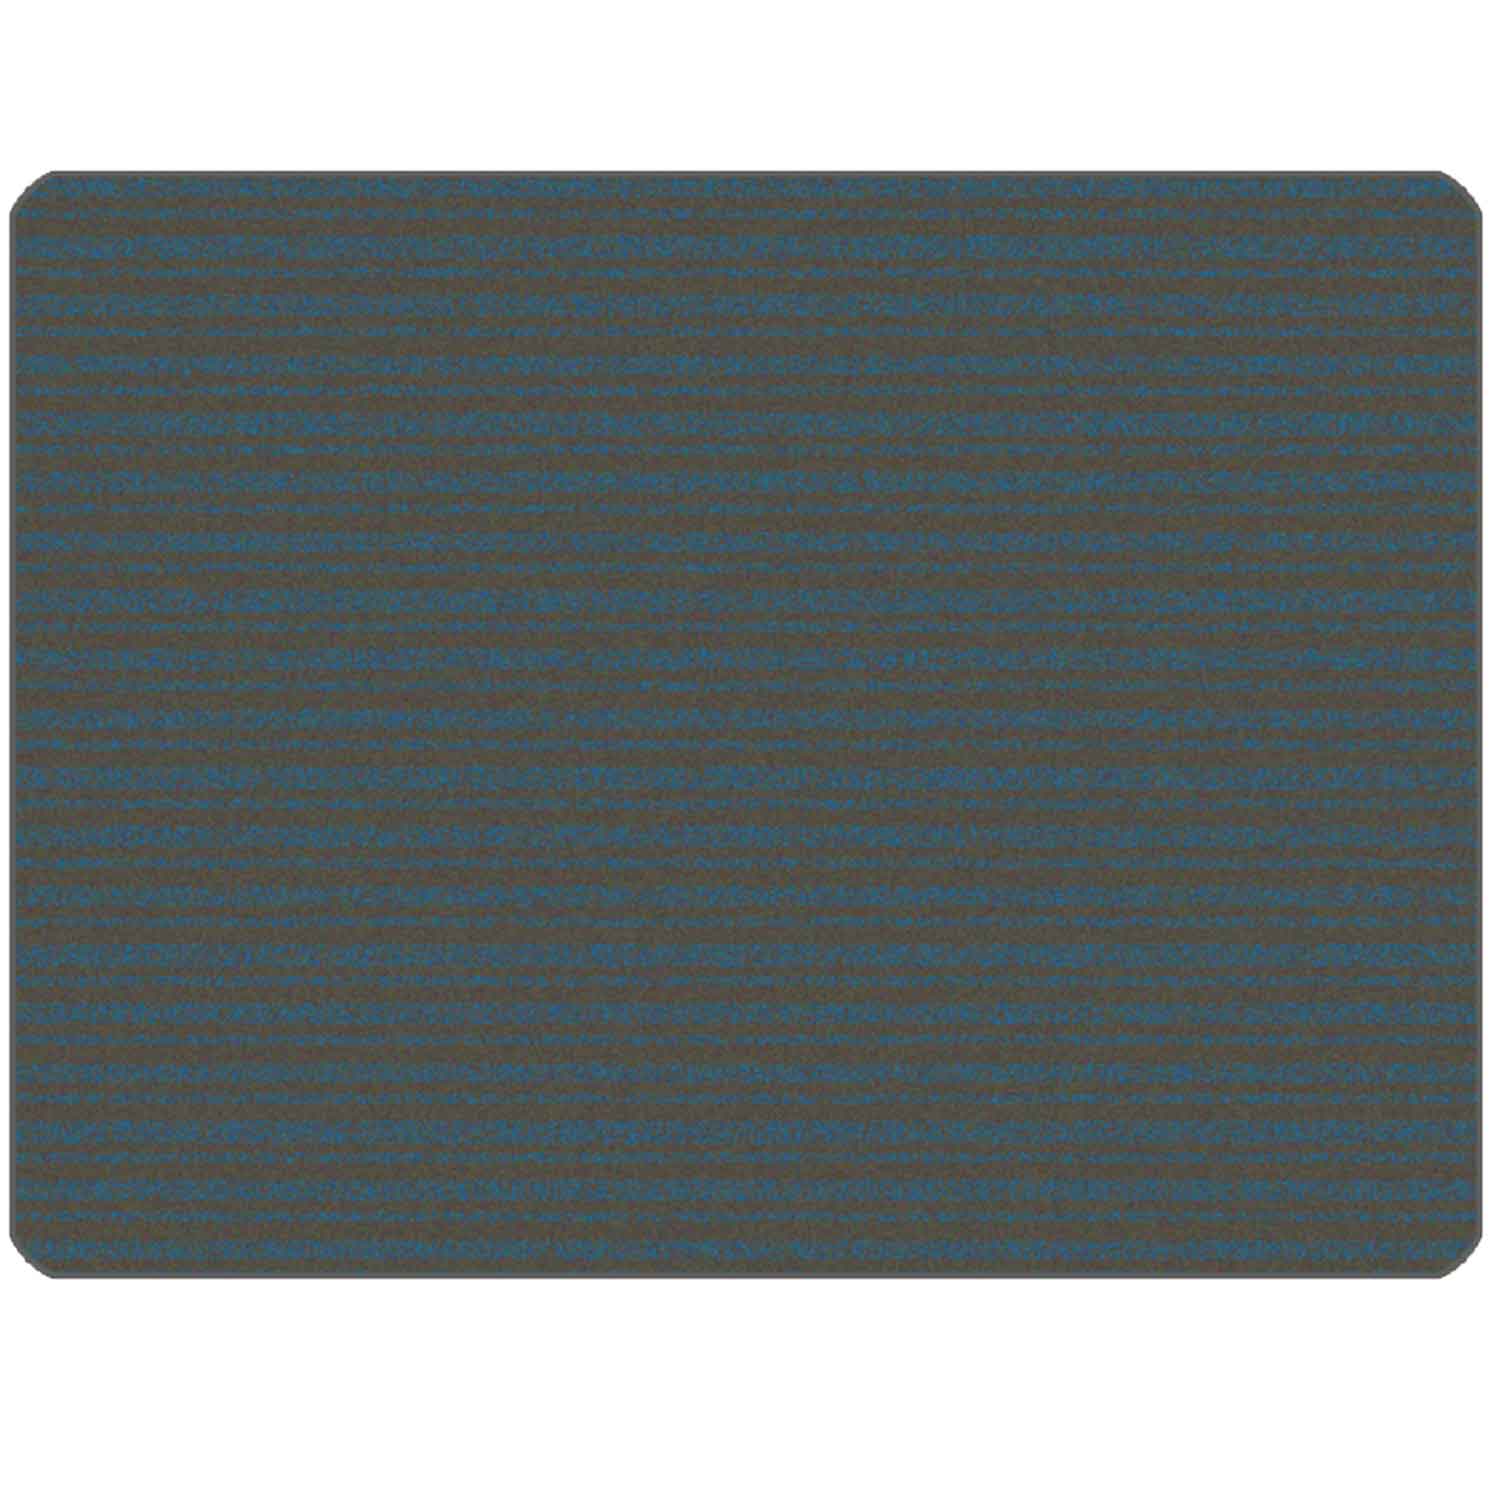 KIDSoft Subtle Stripes Rug Grey Blue 6' x 9'